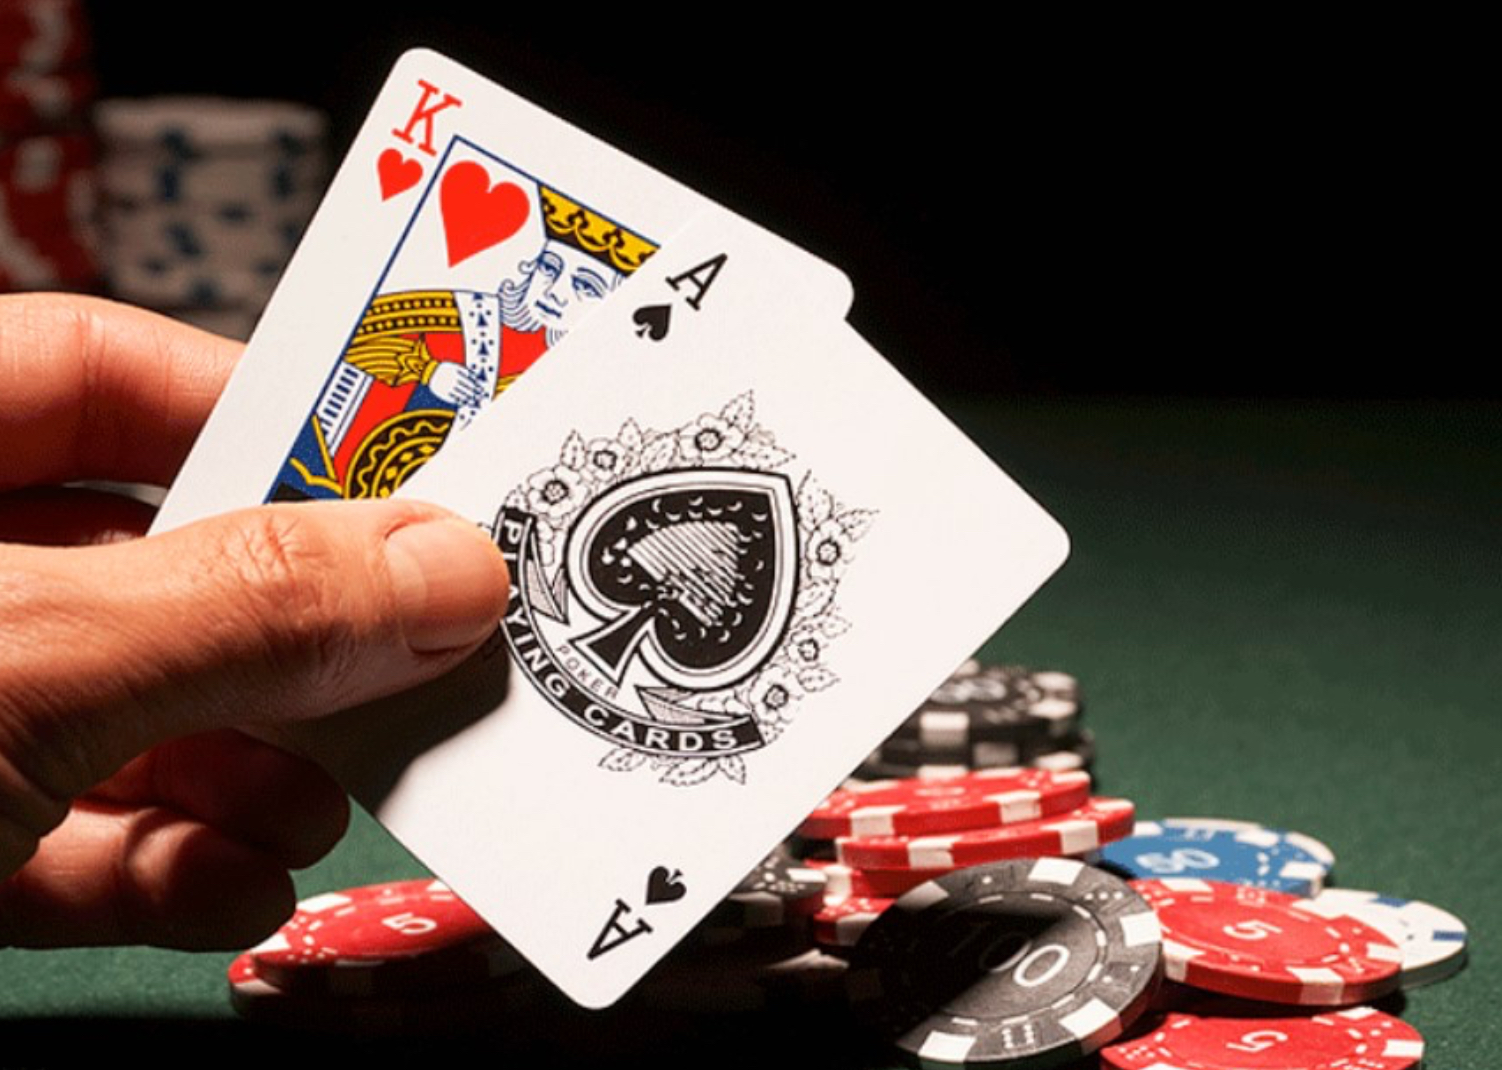  Game bài Poker hiện vẫn chơi có thể xác định được nguồn gốc rõ ràng